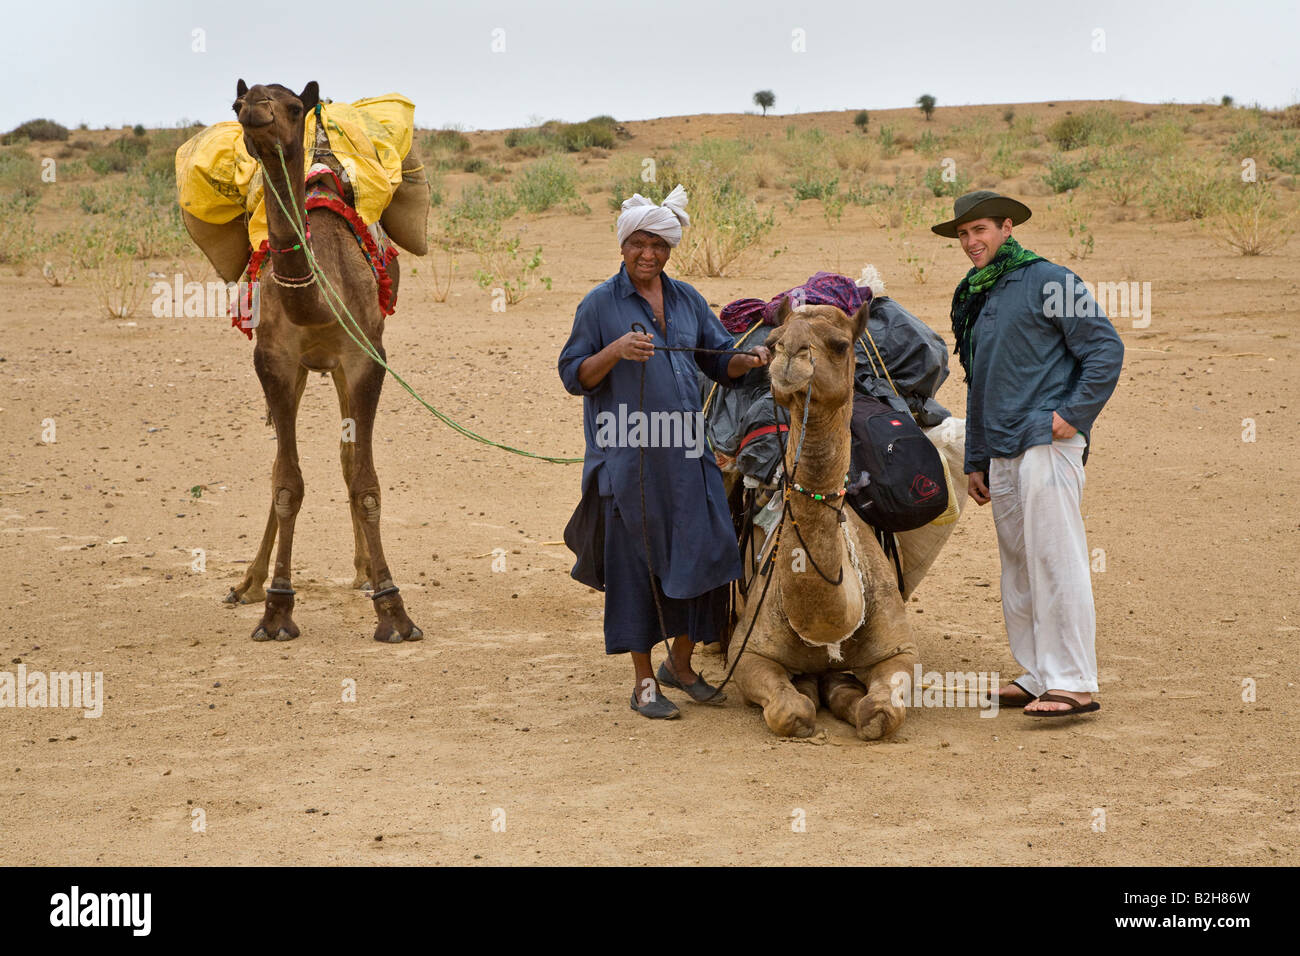 Un touriste se prépare à monter sur le chameau lors d'un safari dans le désert du Thar près de Jaisalmer RAJASTHAN INDE M. Banque D'Images